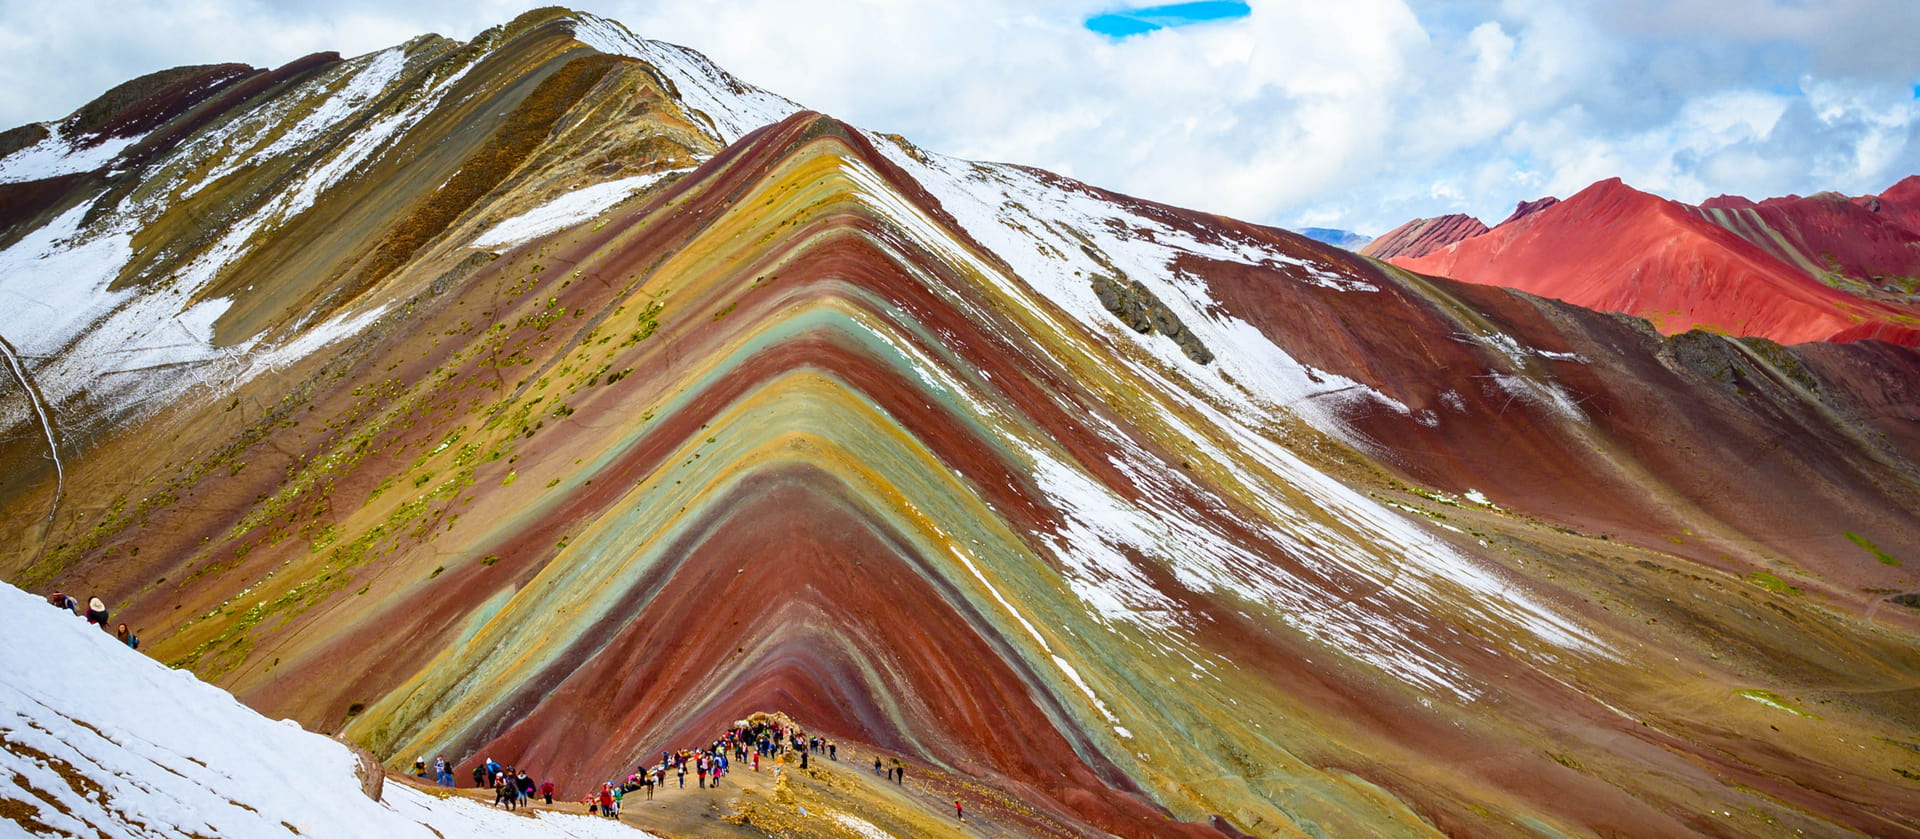 Las montañas de colores en Peru